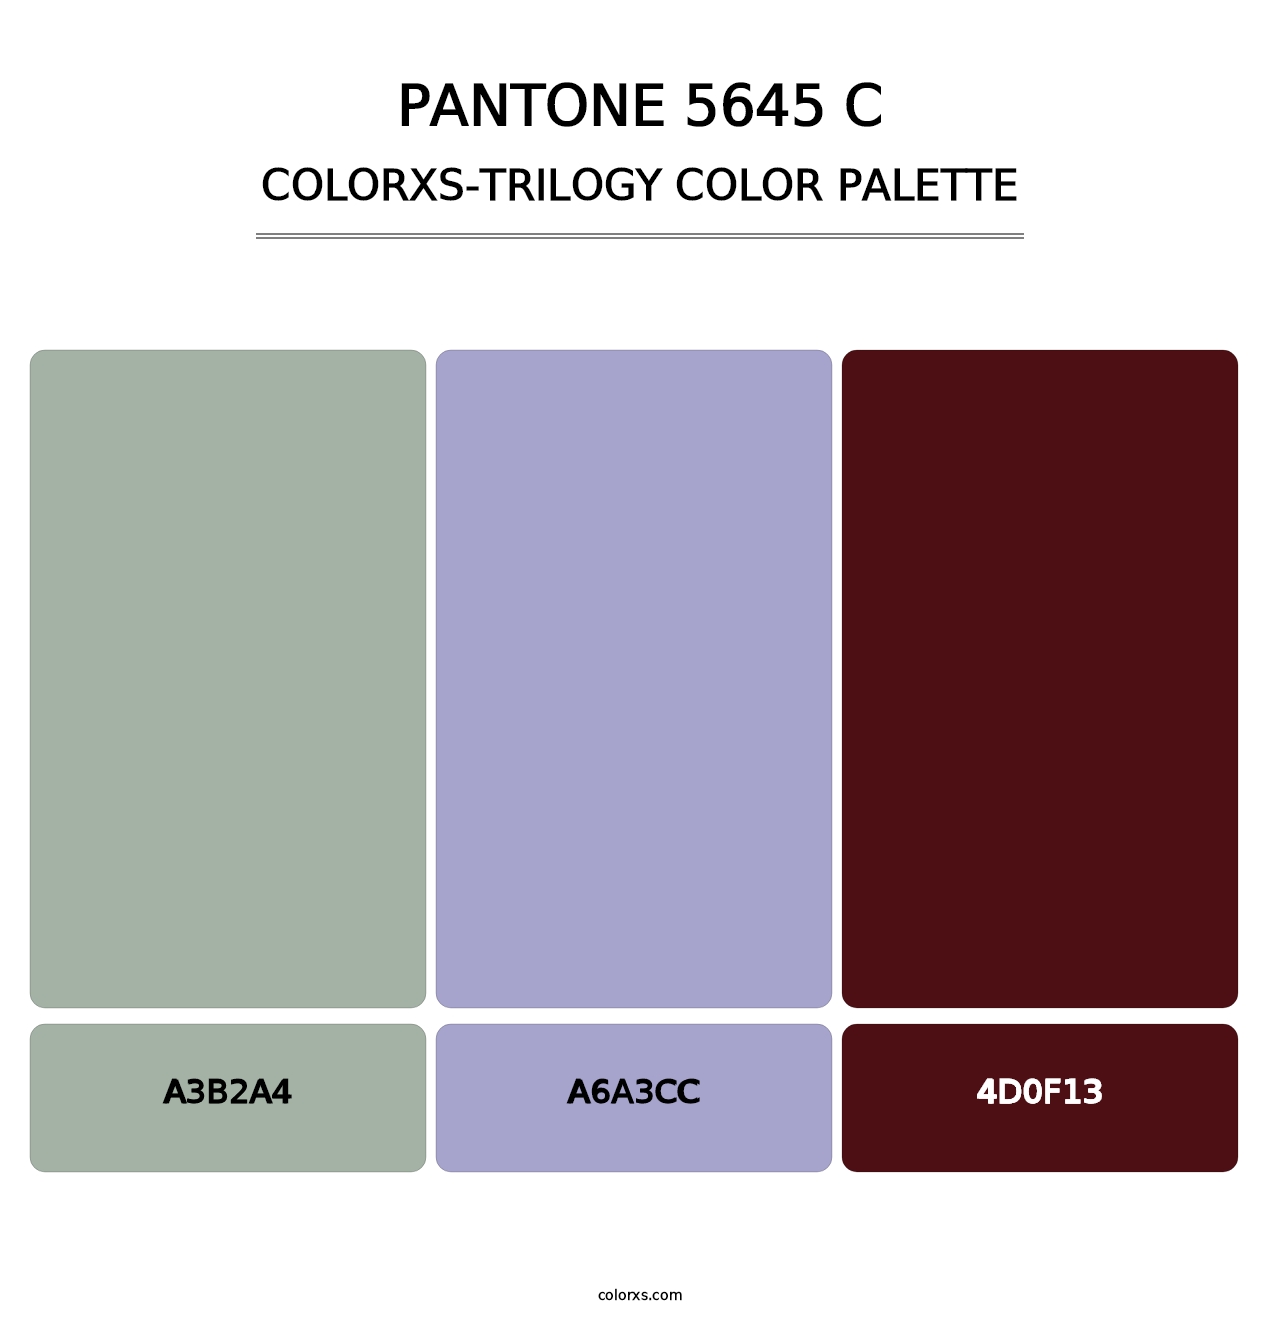 PANTONE 5645 C - Colorxs Trilogy Palette